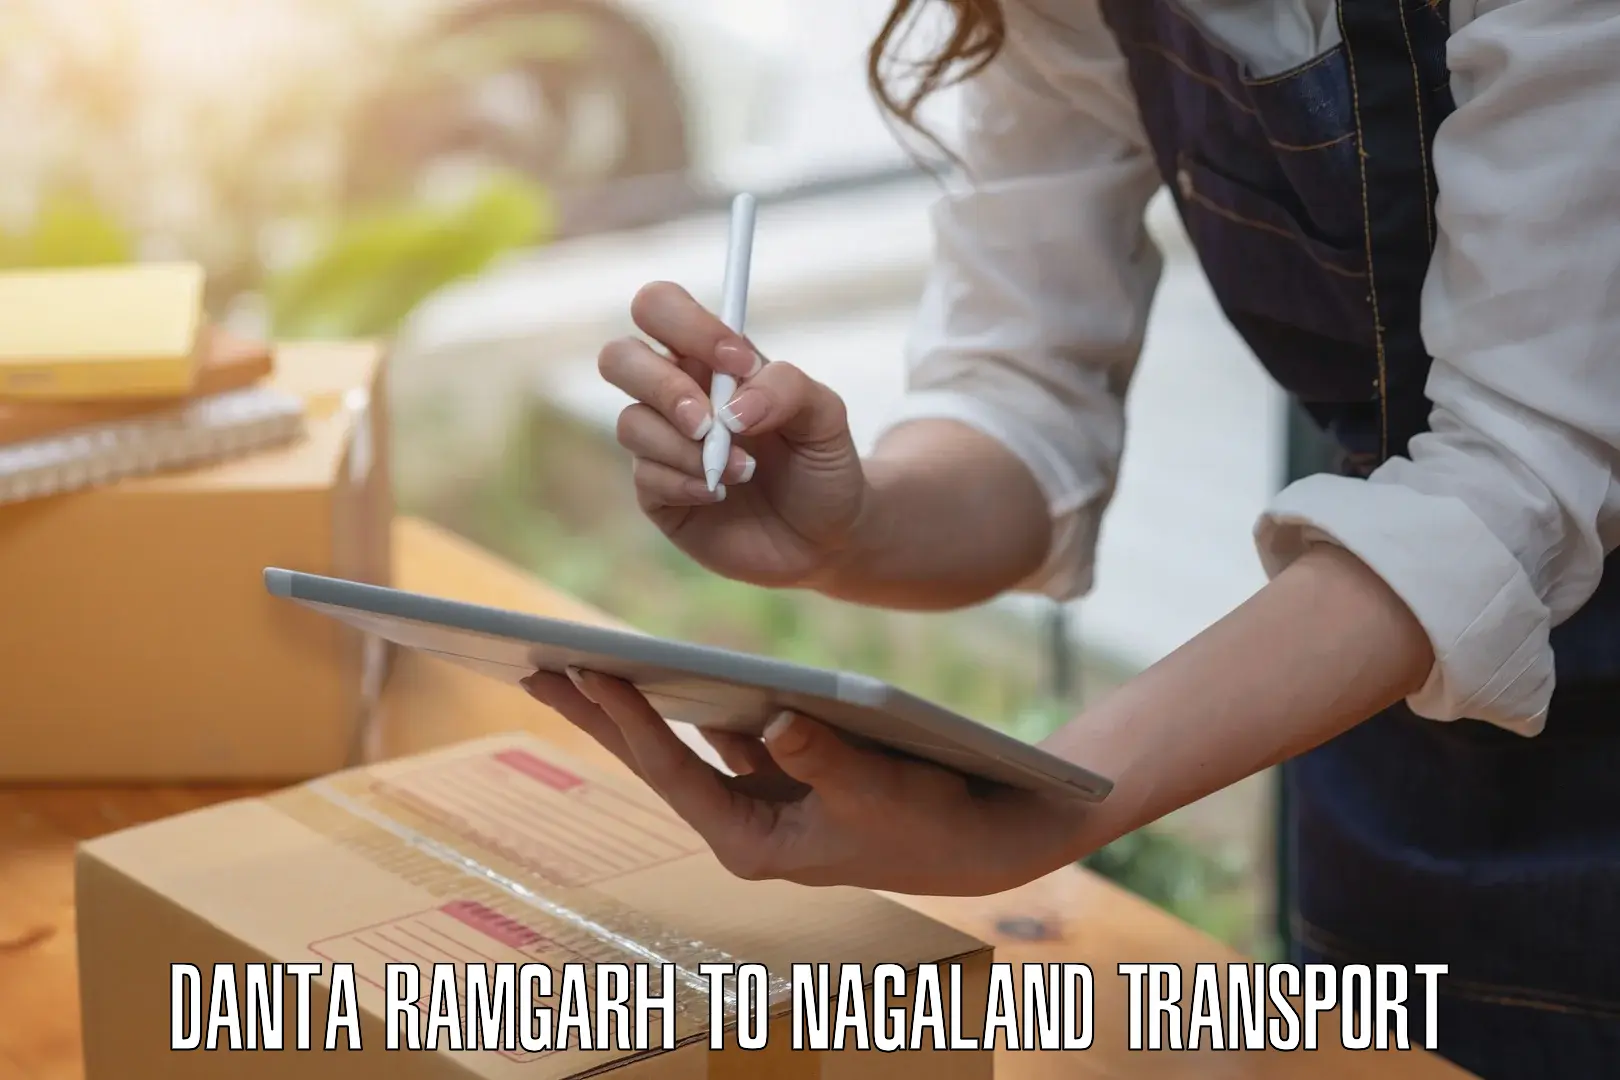 Daily transport service Danta Ramgarh to NIT Nagaland